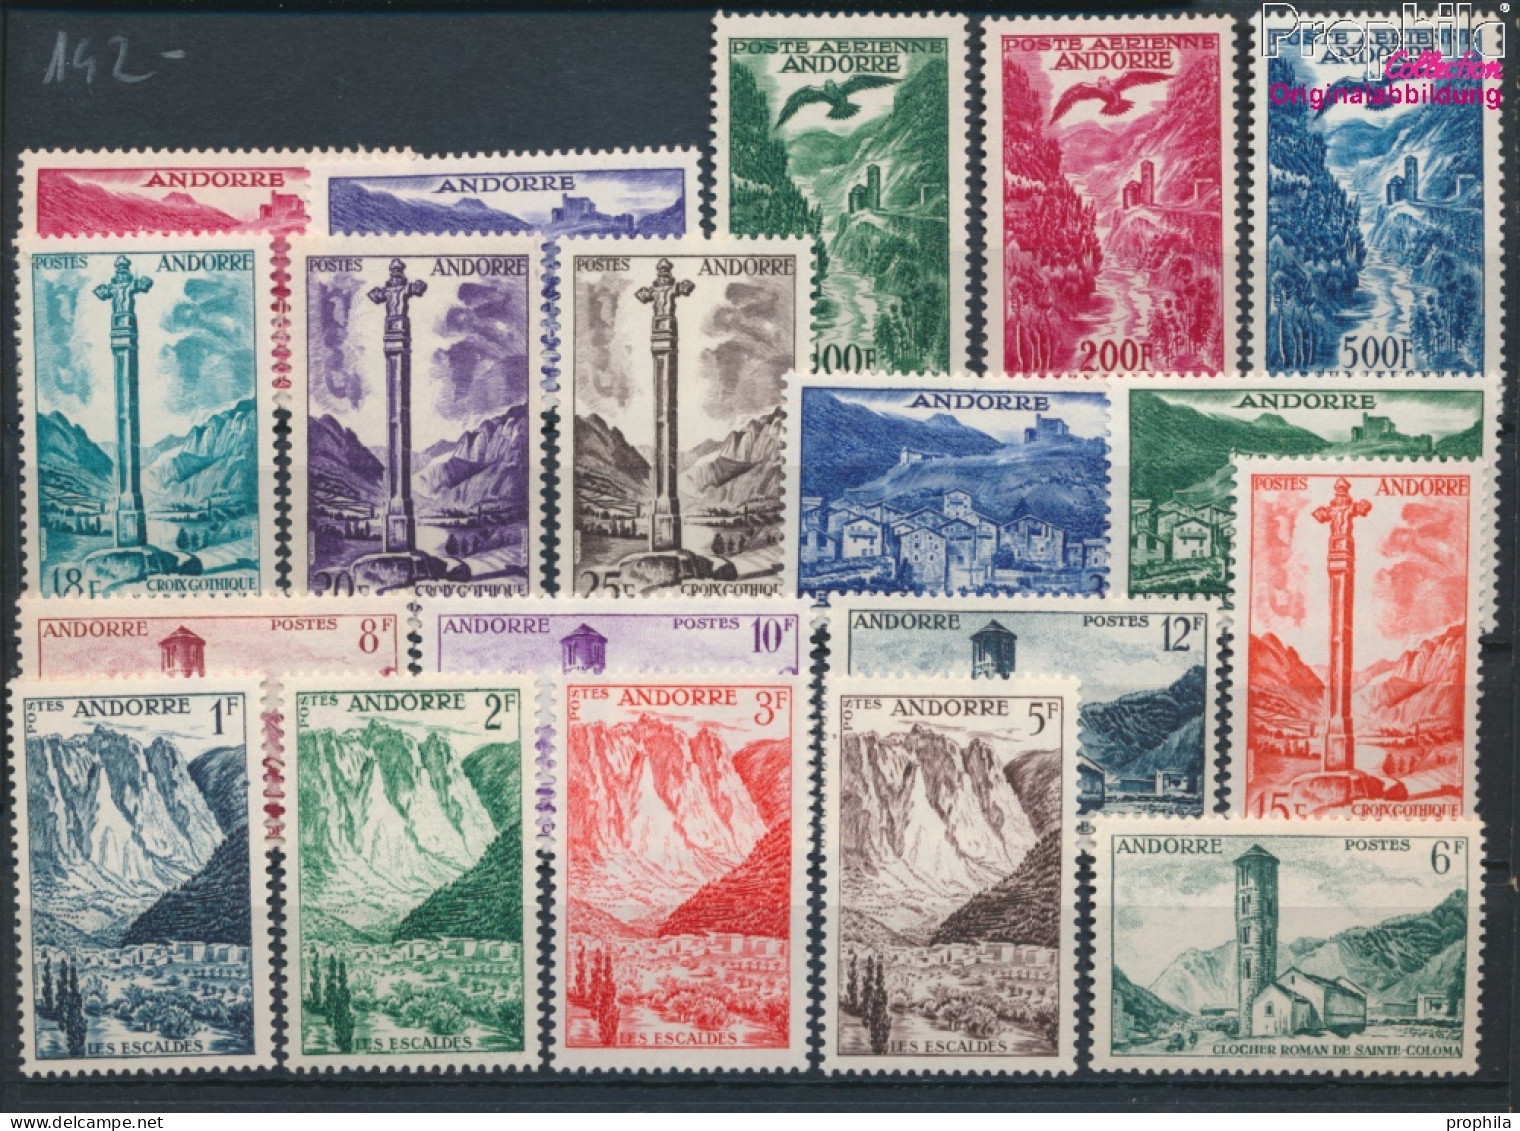 Andorra - Französische Post Postfrisch Landschaften 1955 Landschaften  (10368759 - Unused Stamps